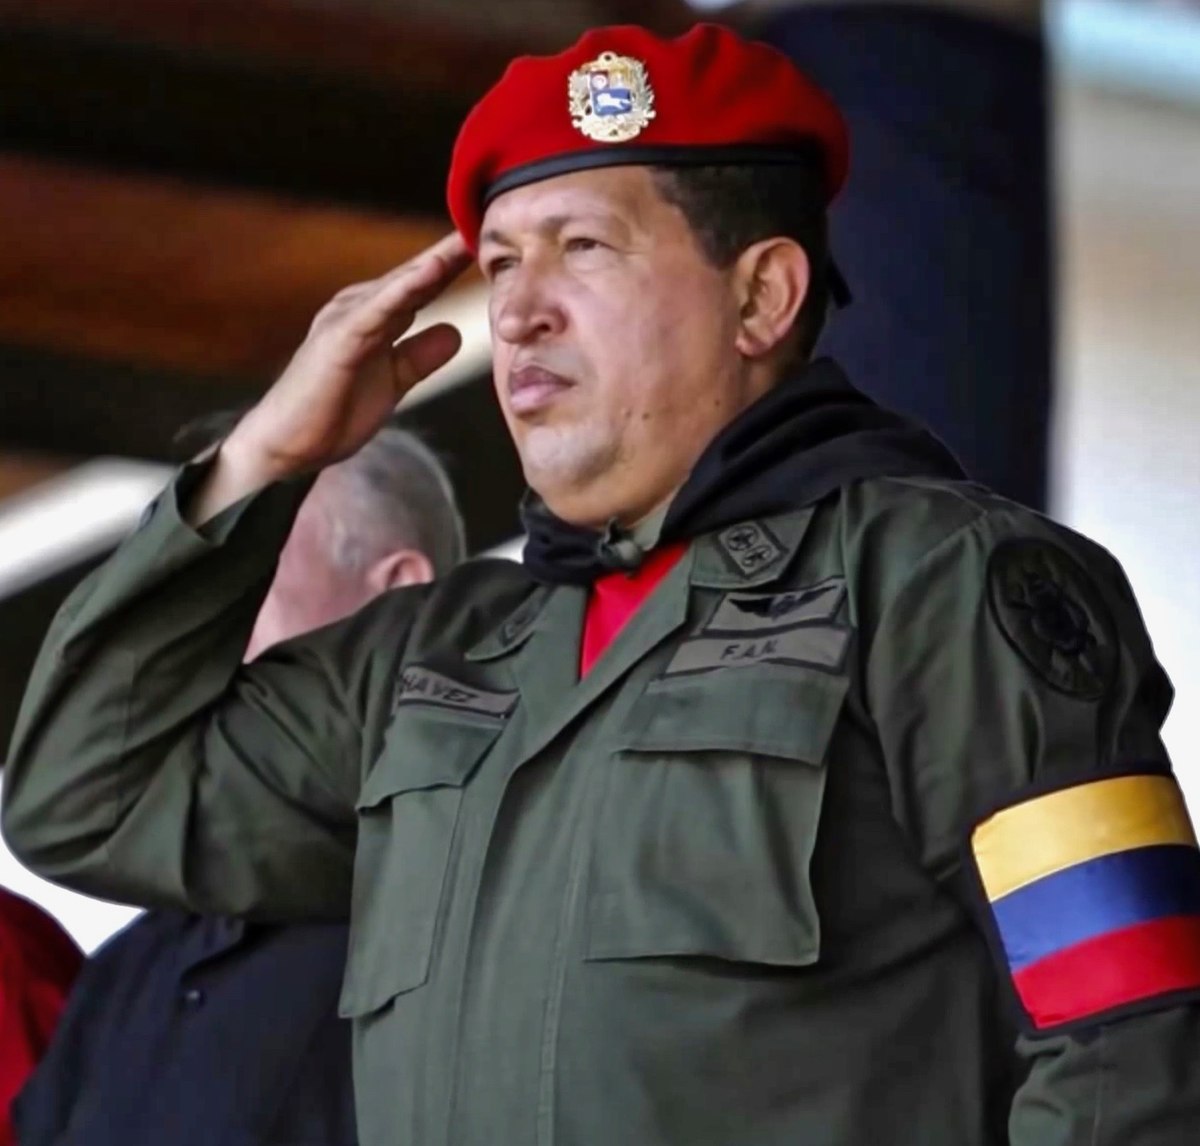 En 2009, Obama s'en prend au président vénézuélien Hugo Chávez qu'il accuse de soutenir le narcotrafic et de ne pas respecter les droits de l'Homme, Chávez lui répond : "Et les droits de l'homme dans la bande de Gaza vous en parlez ? Allez vous laver le cul monsieur Obama."